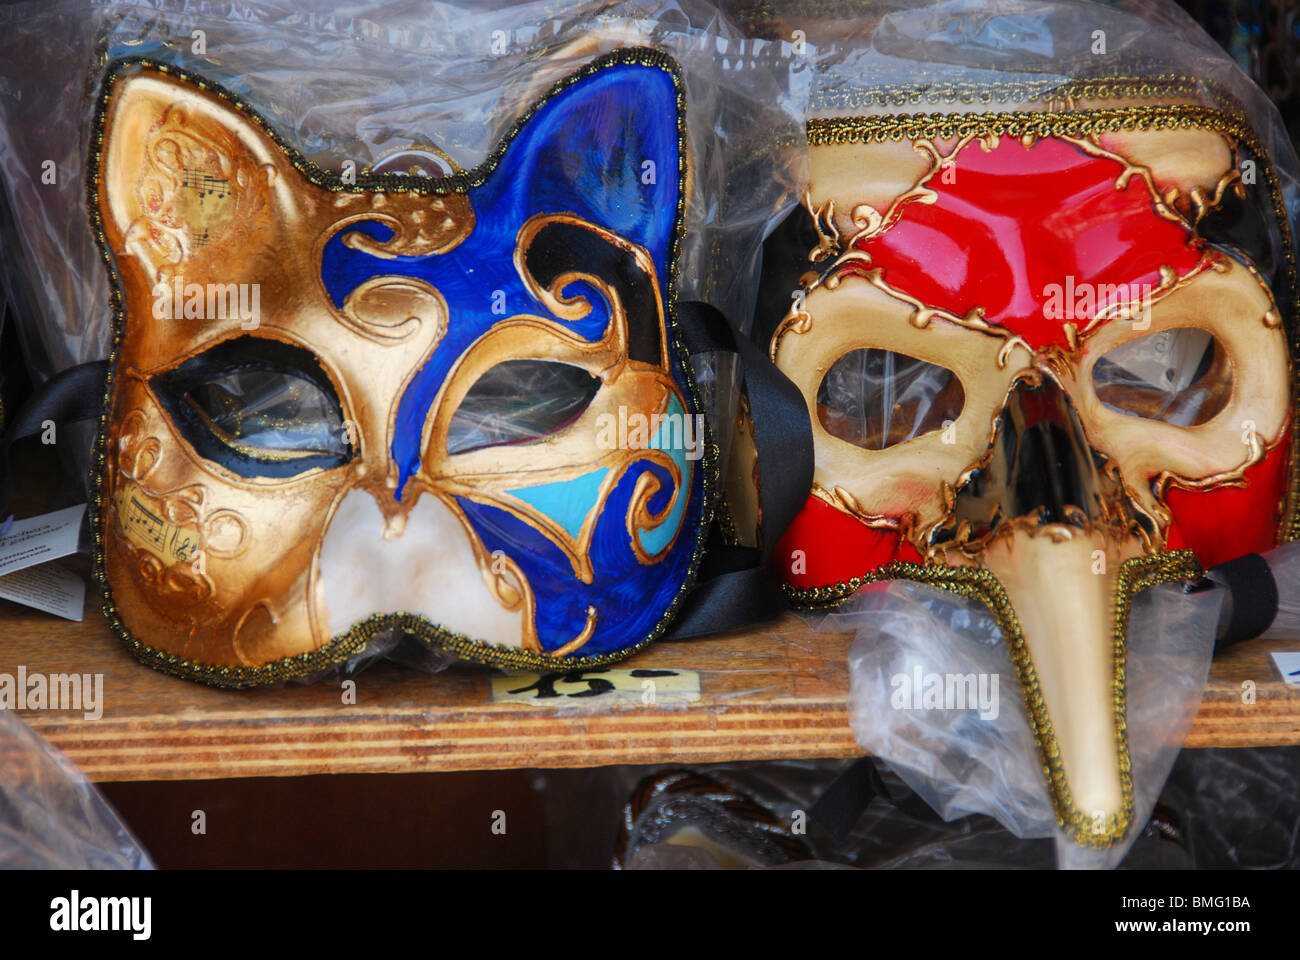 Masques de Venise exposés dans un marché Banque D'Images